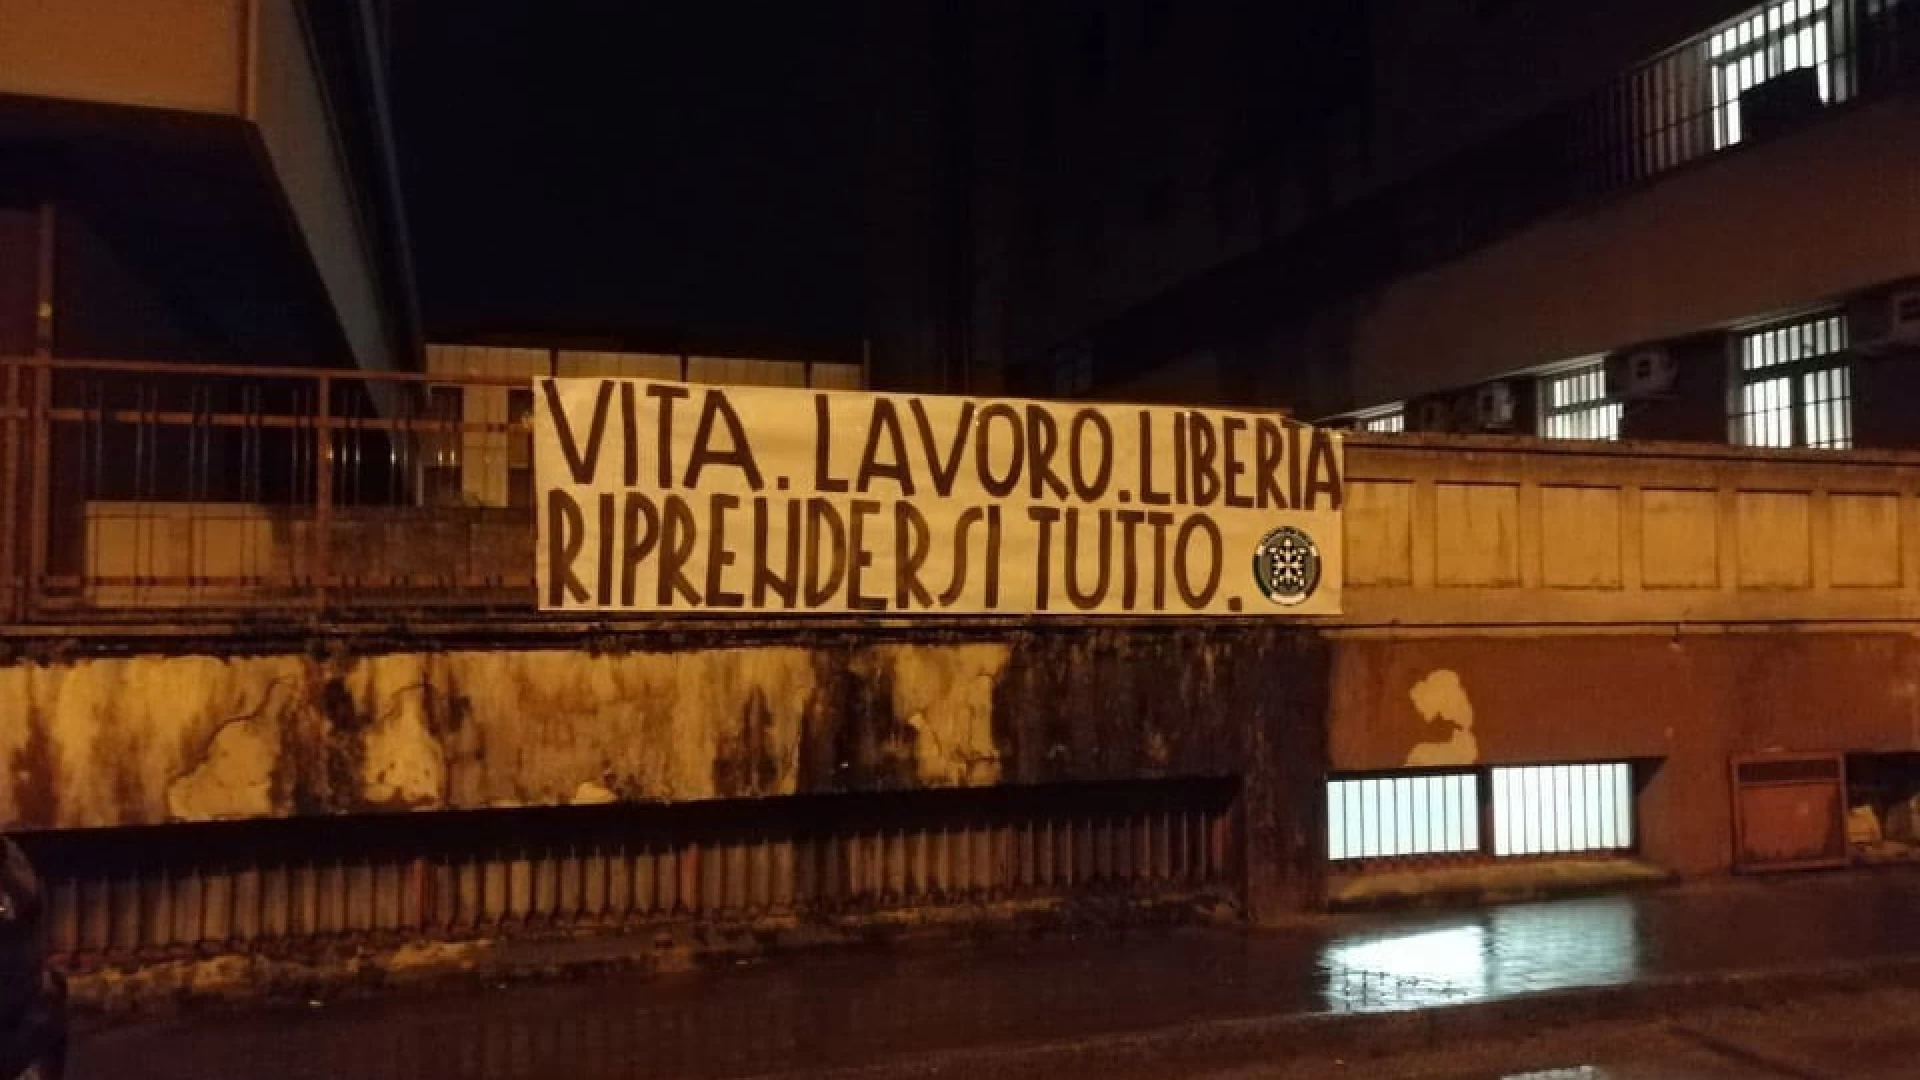 CasaPound: striscioni in Abruzzo e Molise contro le restrizioni: "Riprendersi tutto"